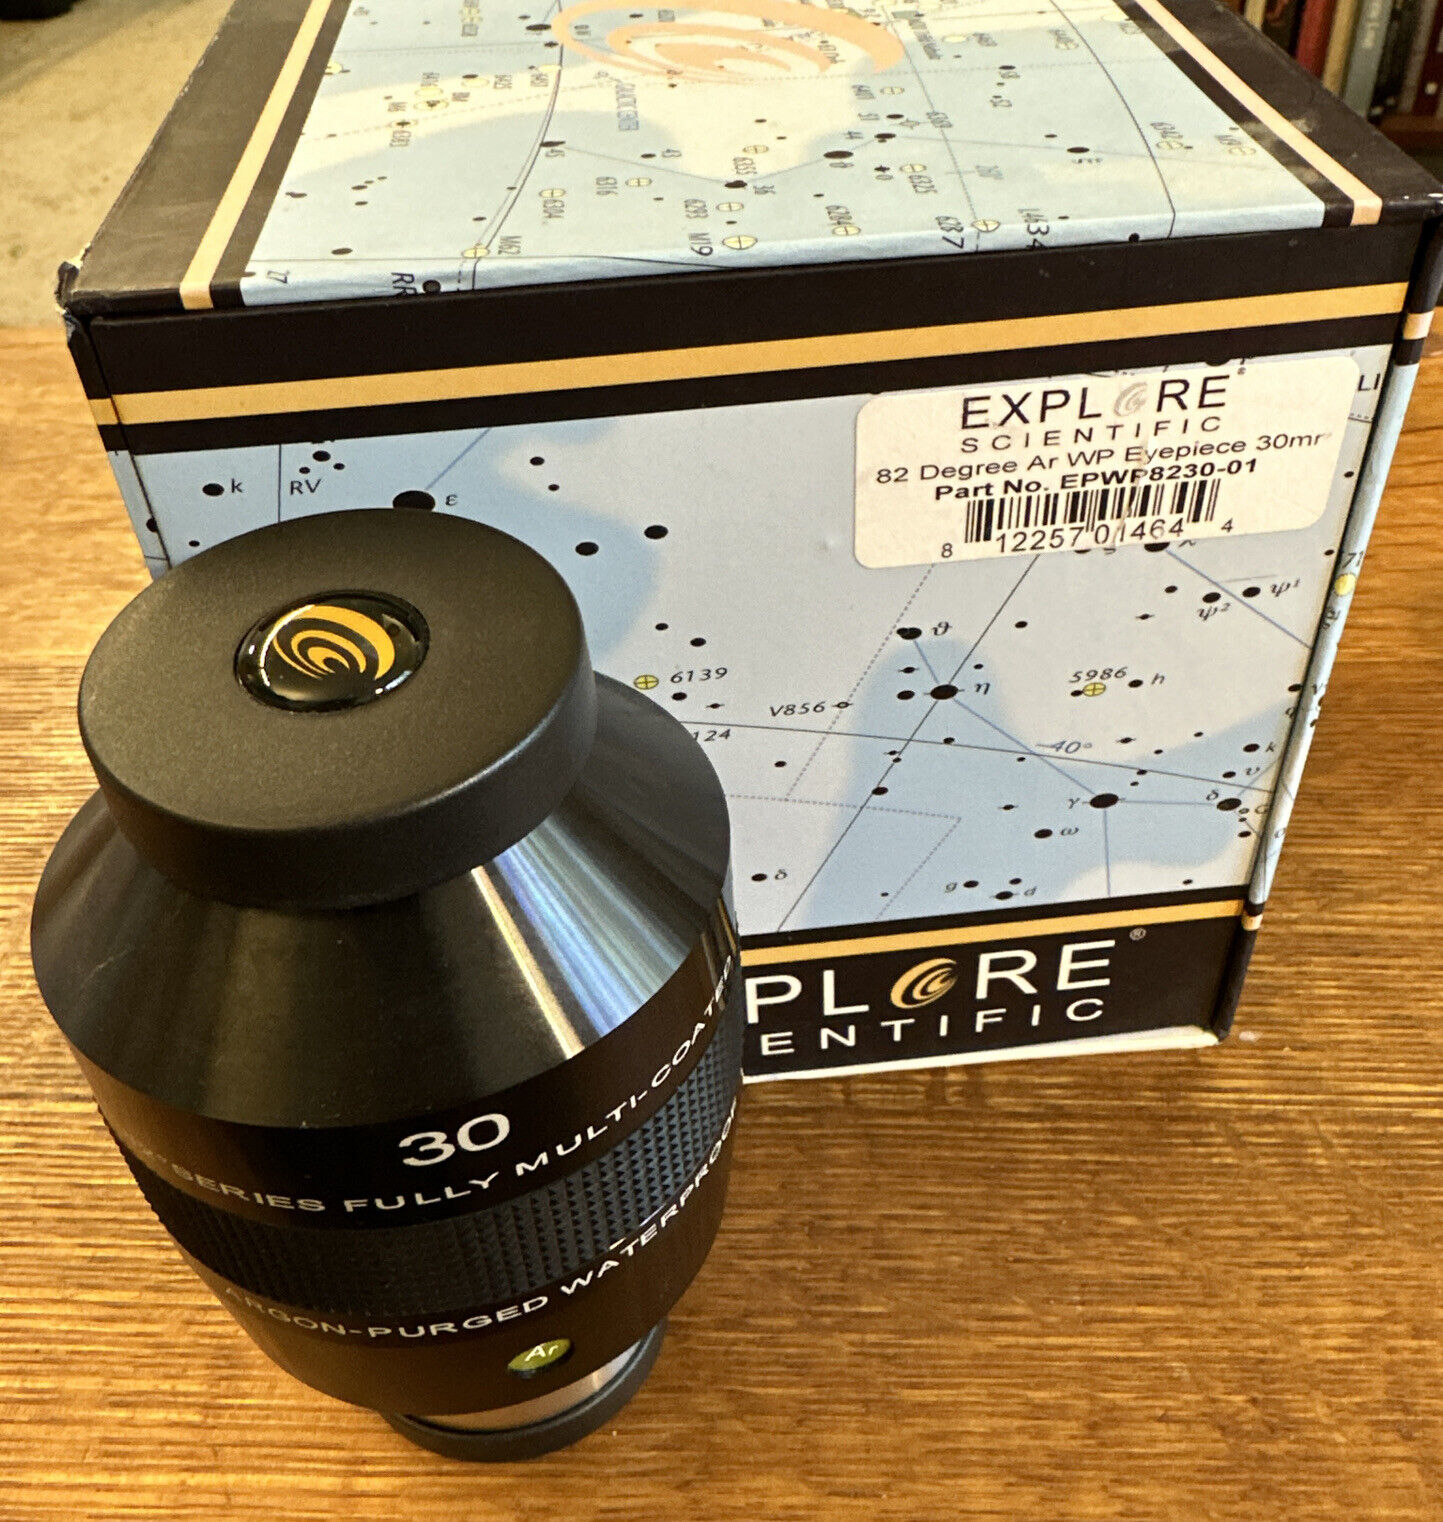 Explore Scientific 82° 30mm Eyepiece 2-inch Barrel